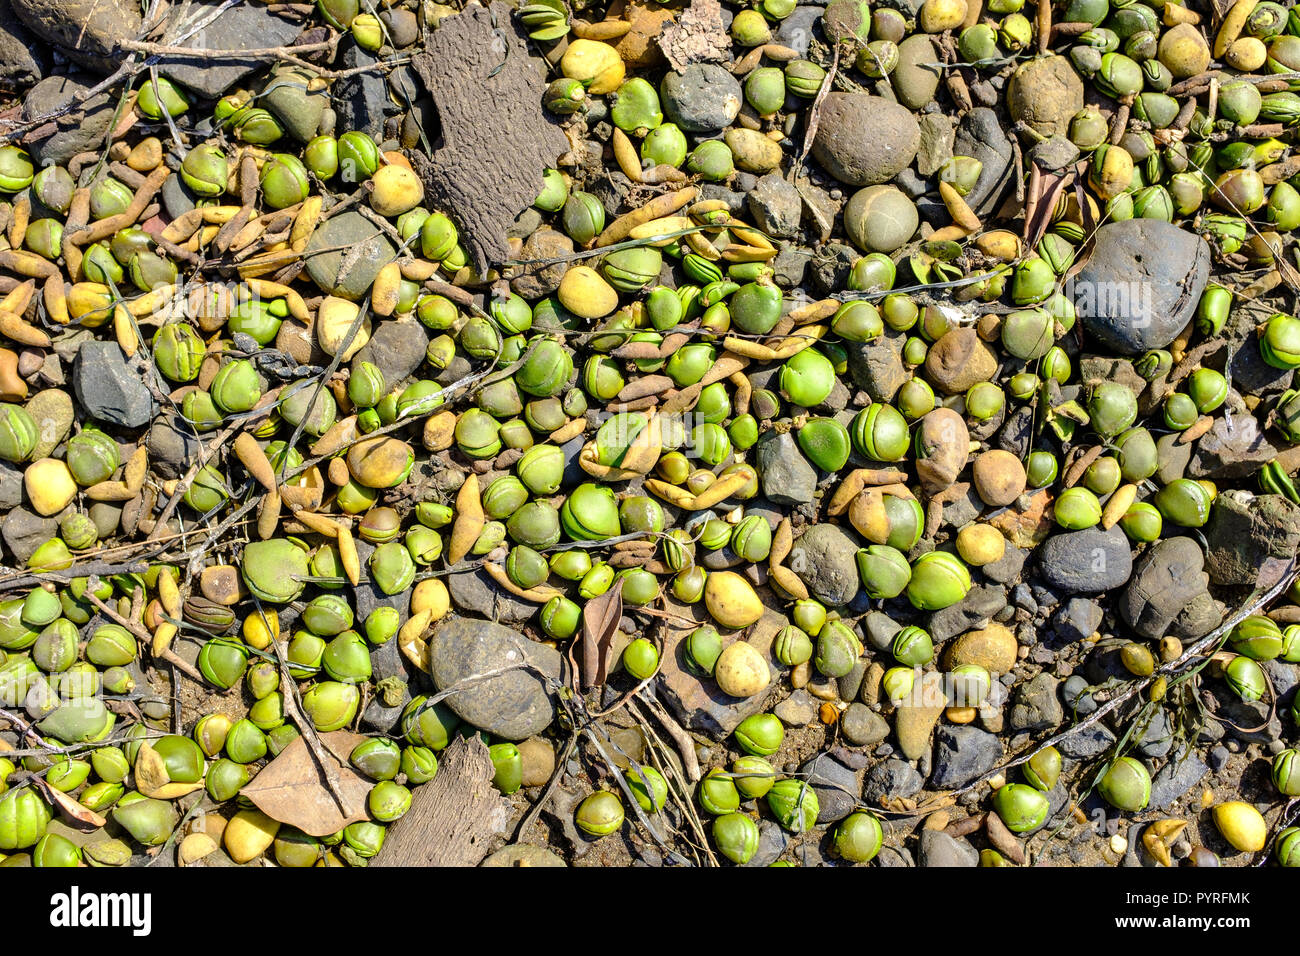 Australia grigio (mangrovia Avicennia marina) semi di alberi lavato sulla spiaggia rocciosa e queste sono piante pioniere che colonizzano e dare protezione dello tsunami Foto Stock